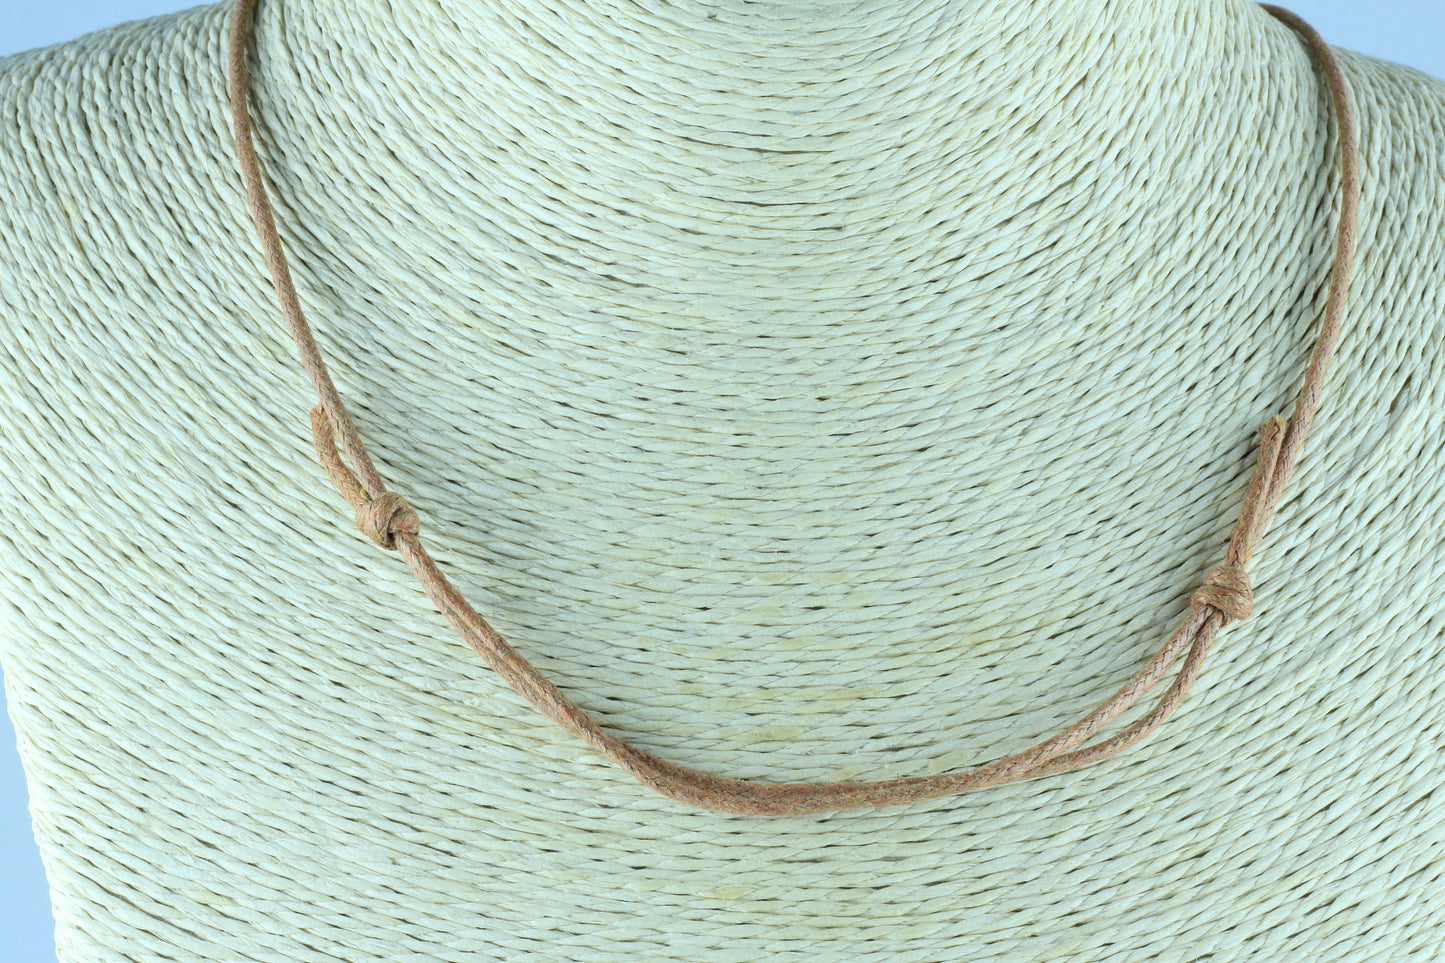 Medusa pendant  Wooden necklace